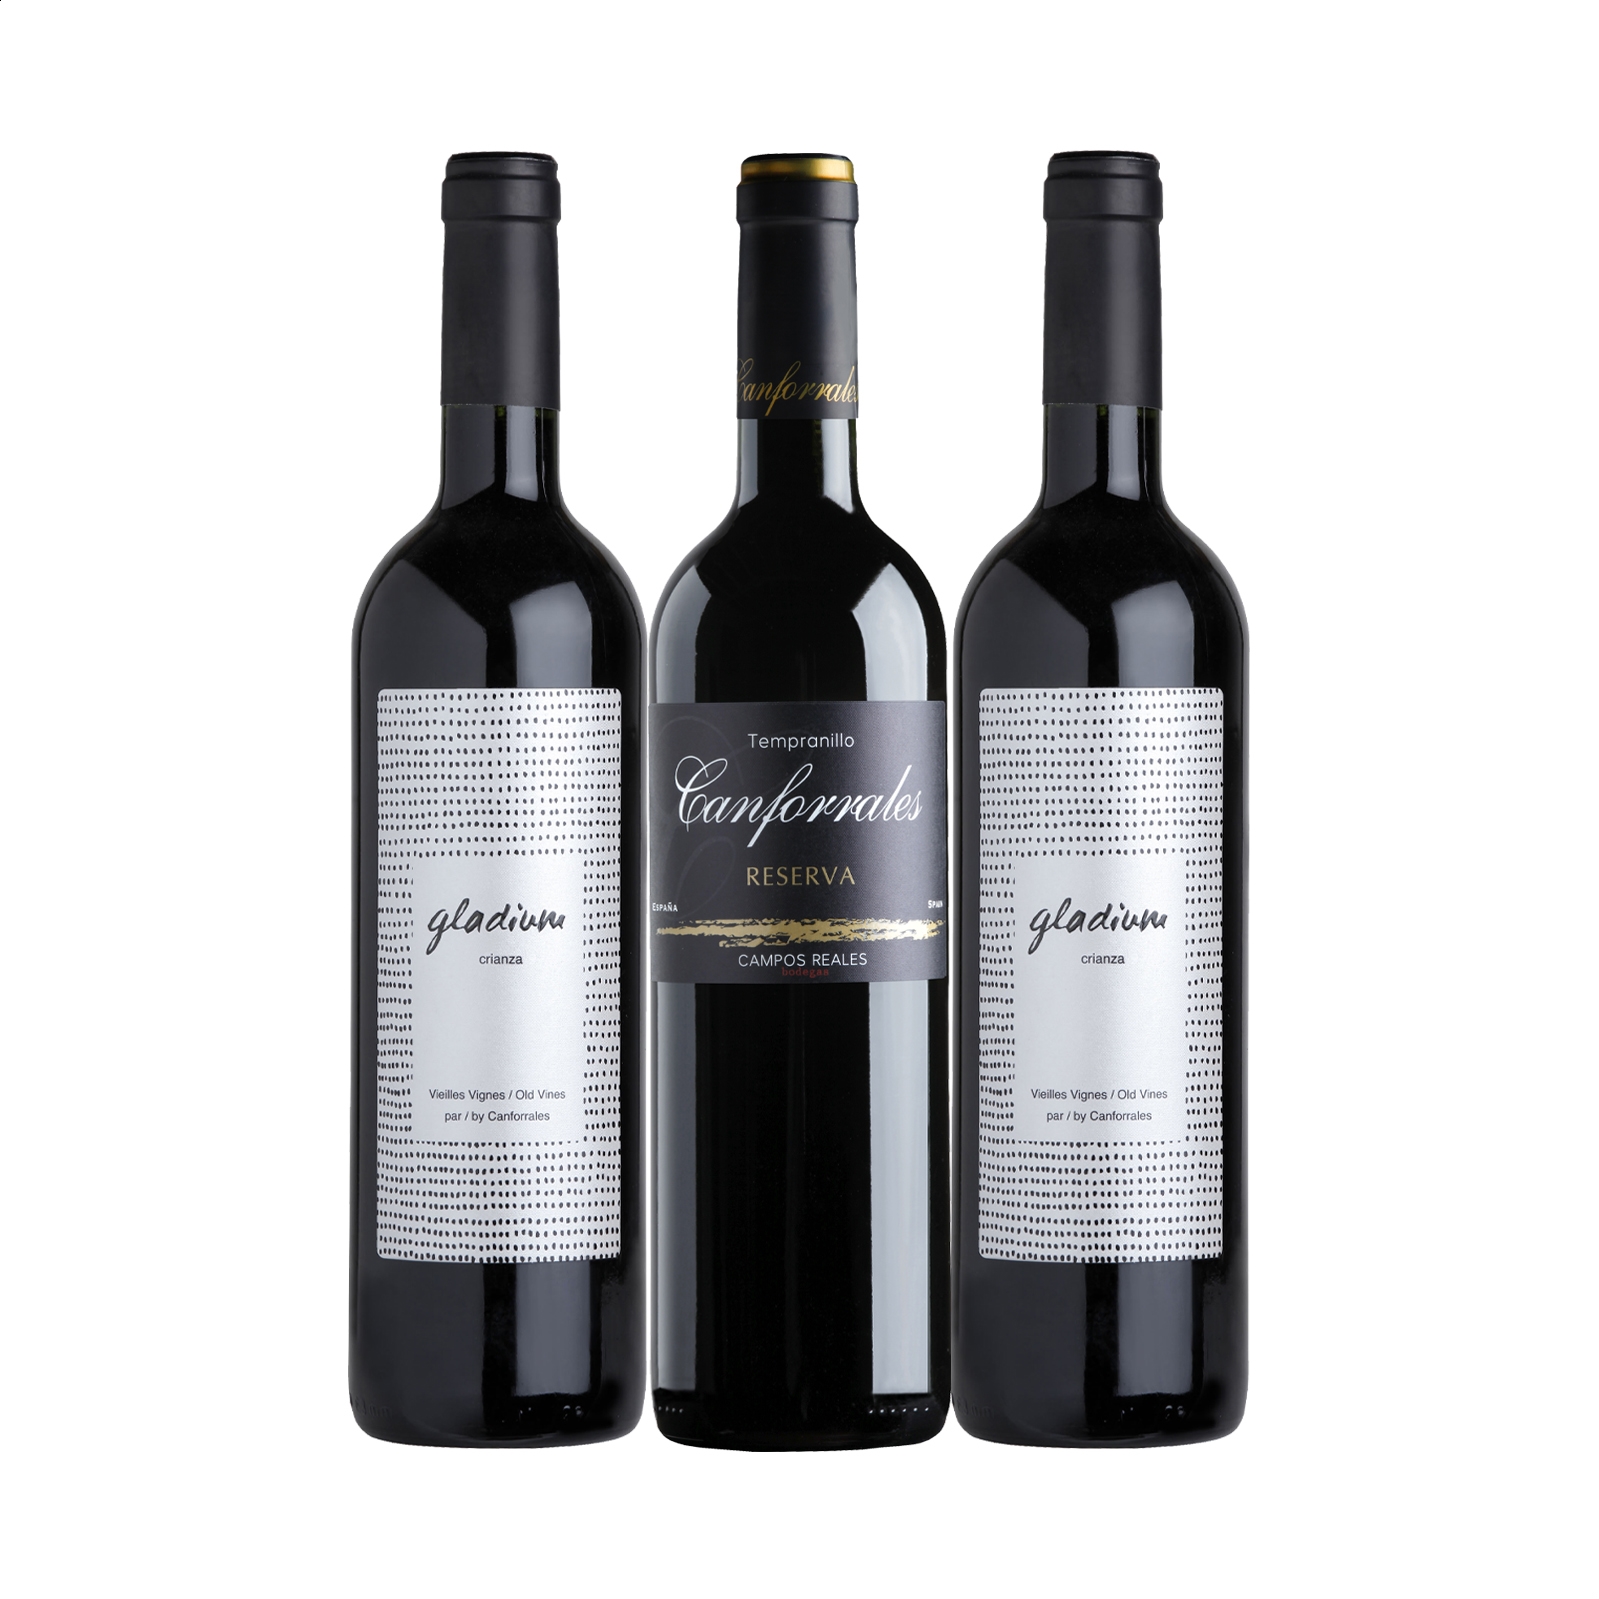 Bodegas Campos Reales – Lote viñas viejas vino tinto Gladium y Canforrales D.O.P. La Mancha 75cl, 3uds